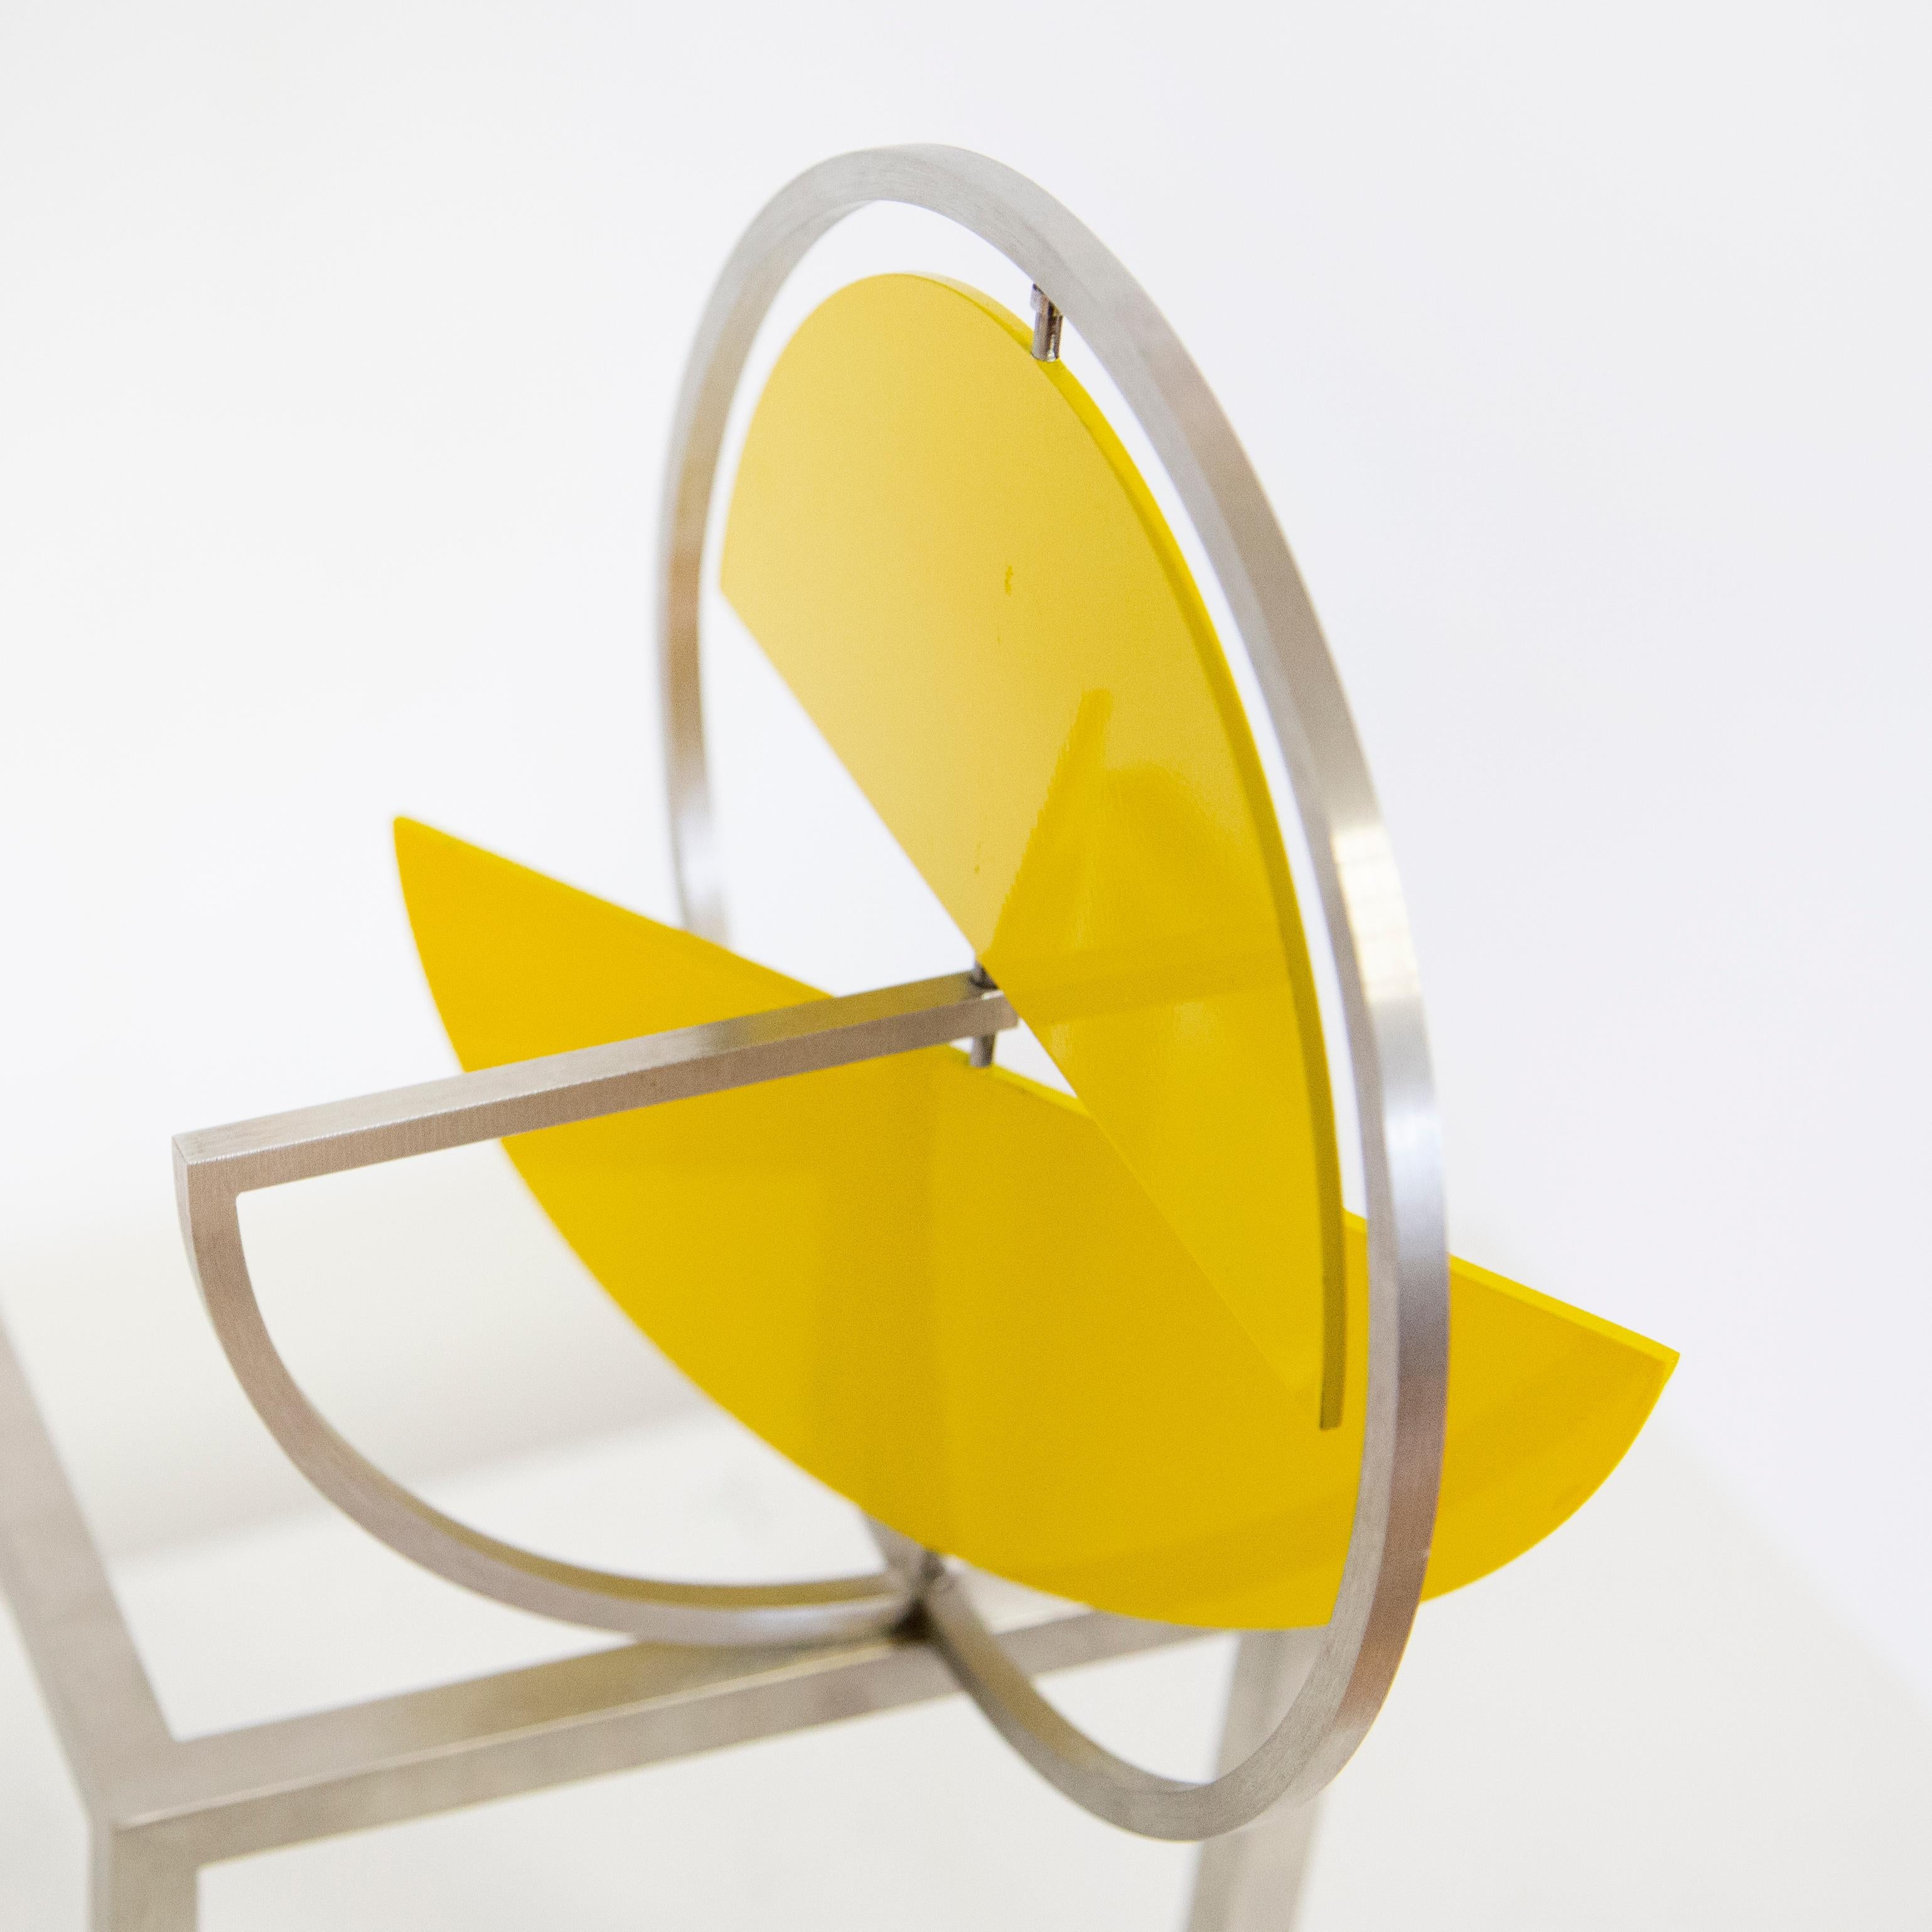 Disc jaune sur deux carrés, sculpture cinétique - Cinétique Sculpture par Roger Phillips